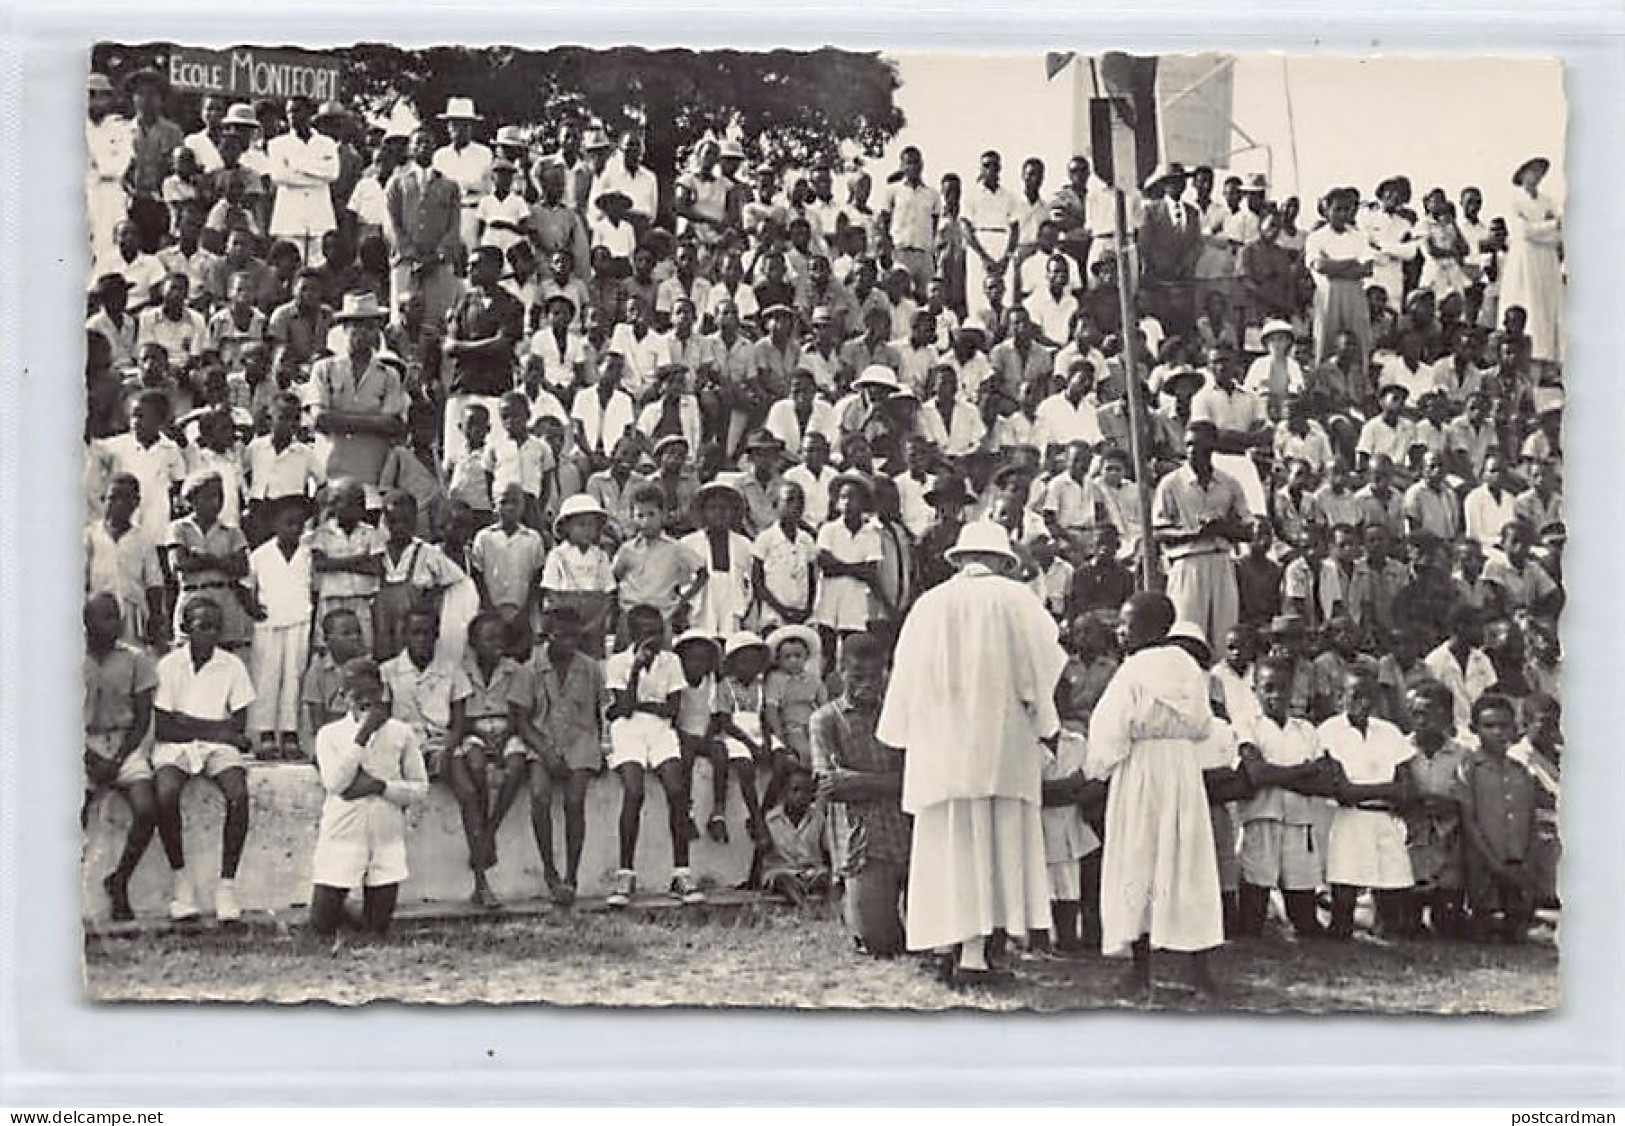 Gabon - Pères Du Saint-Esprit - LIBREVILLE - Distribution De La Sainte-Communion - Ed. S. Boanich 3171 - Gabon